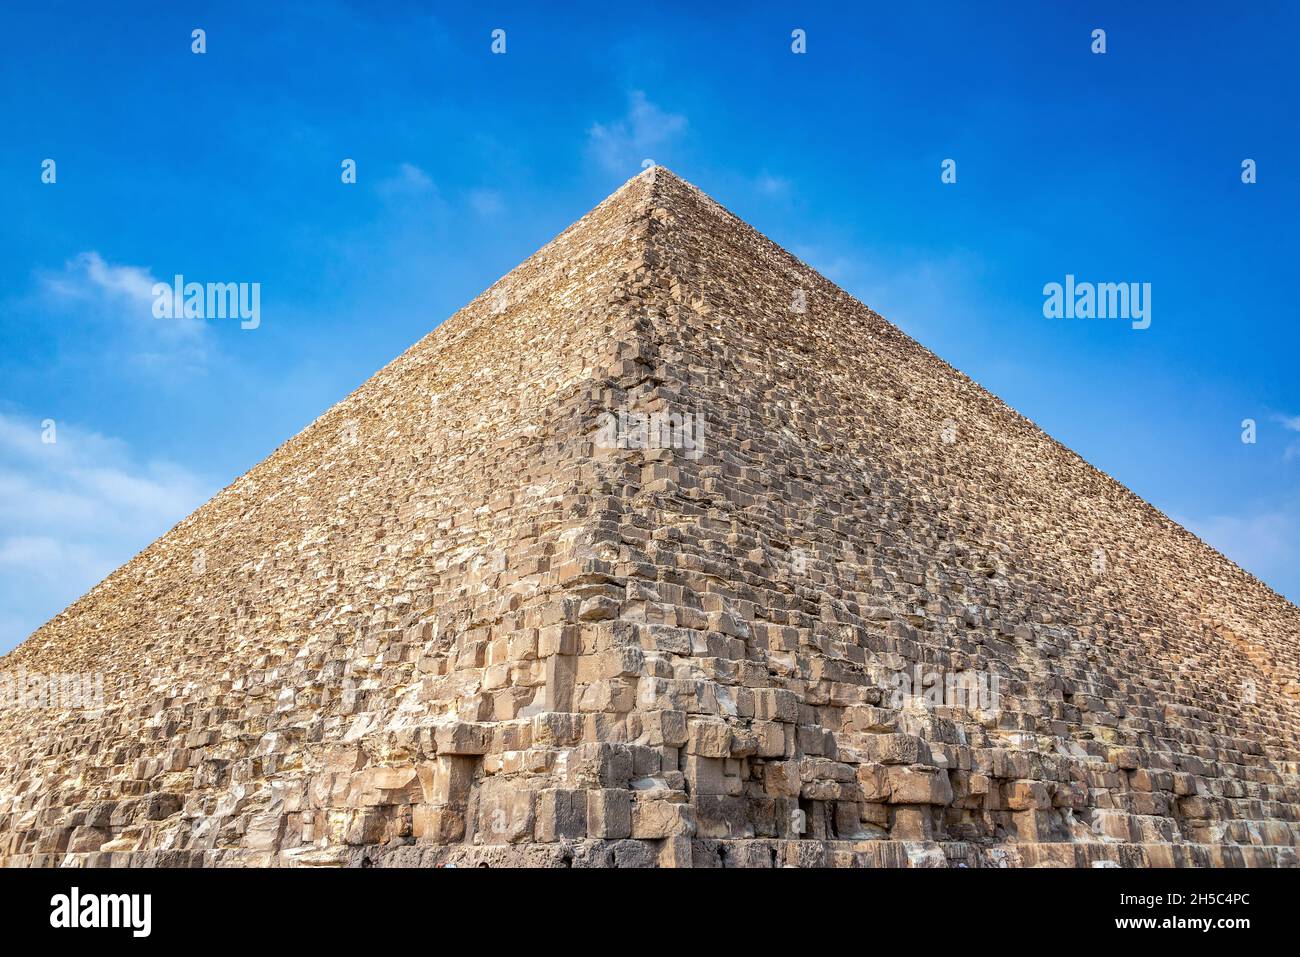 Gran Pirámide de Egipto y espectacular cielo azul Foto de stock